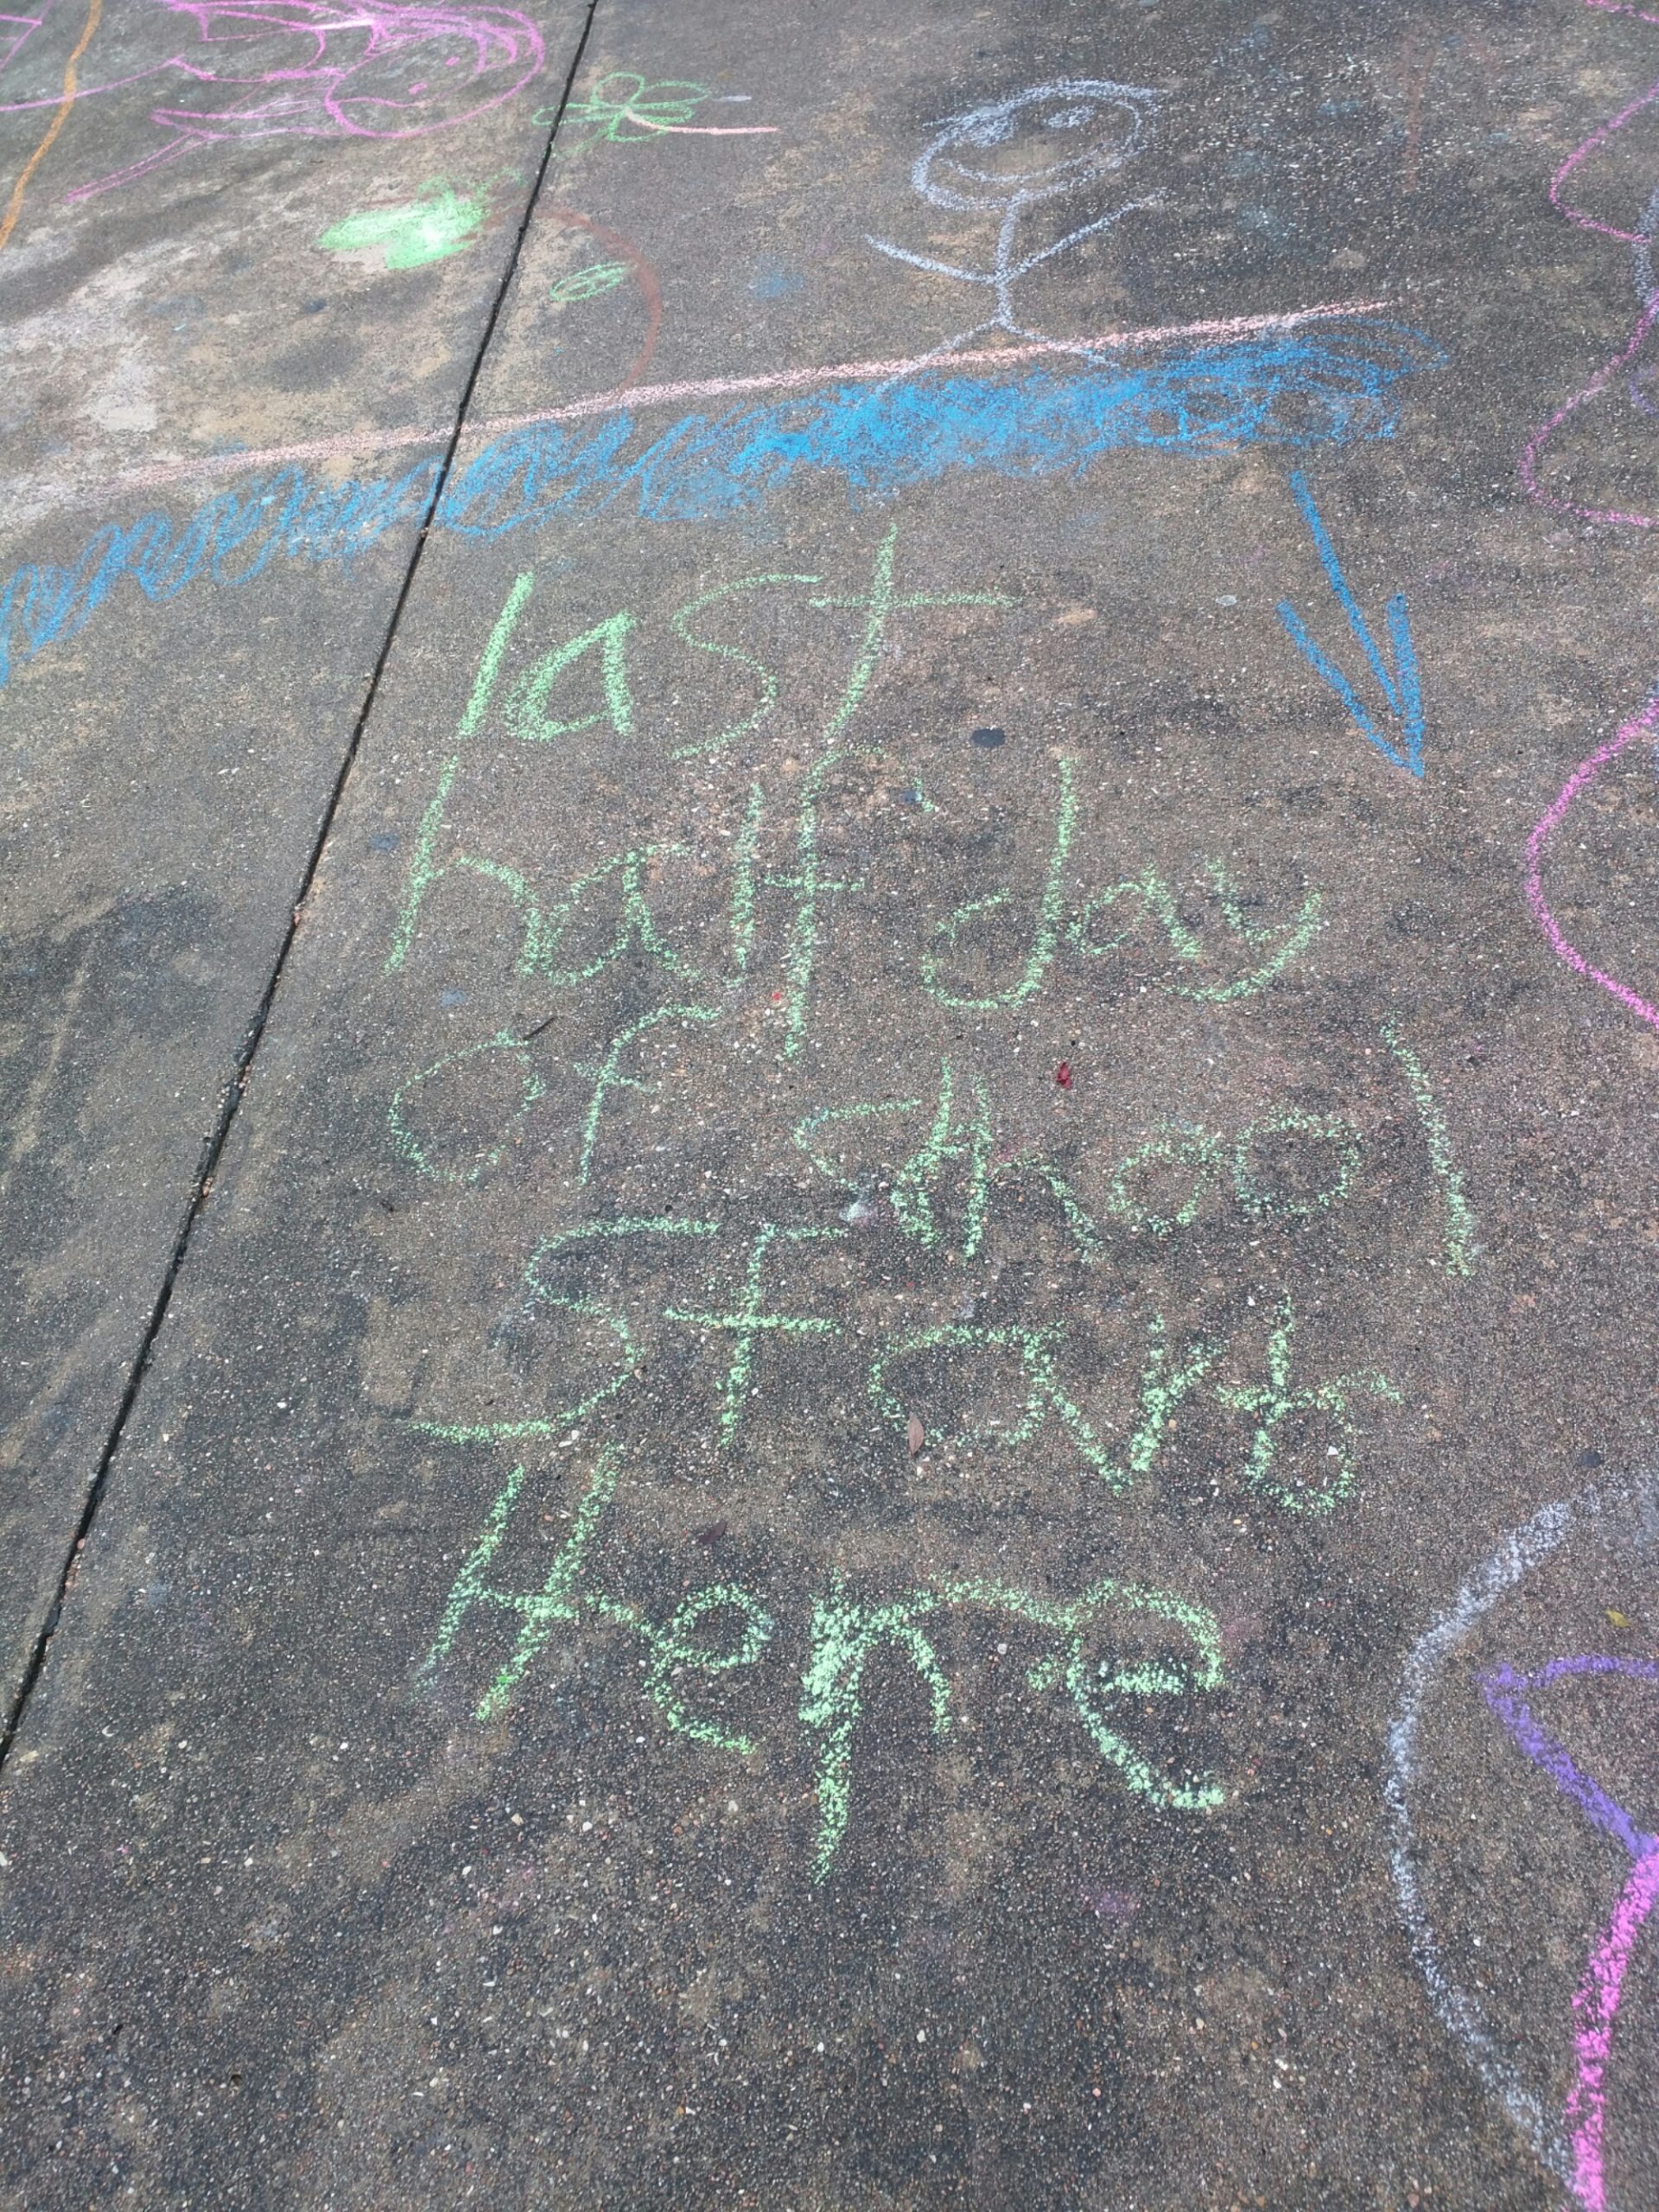 Chalk writing on sidewalk